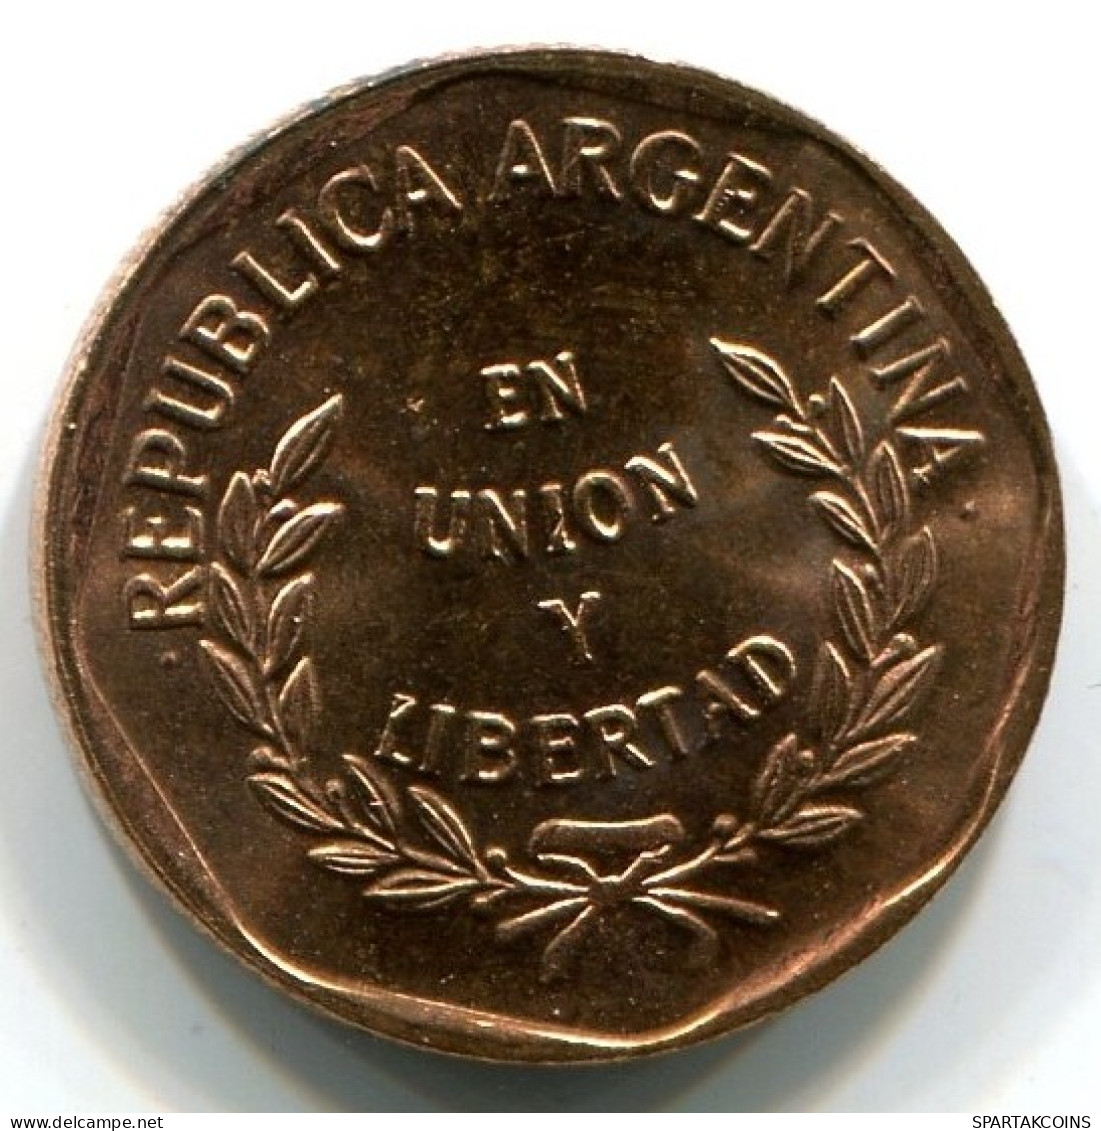 1 CENTAVO 1998 ARGENTINIEN ARGENTINA Münze UNC #W10952.D.A - Argentine